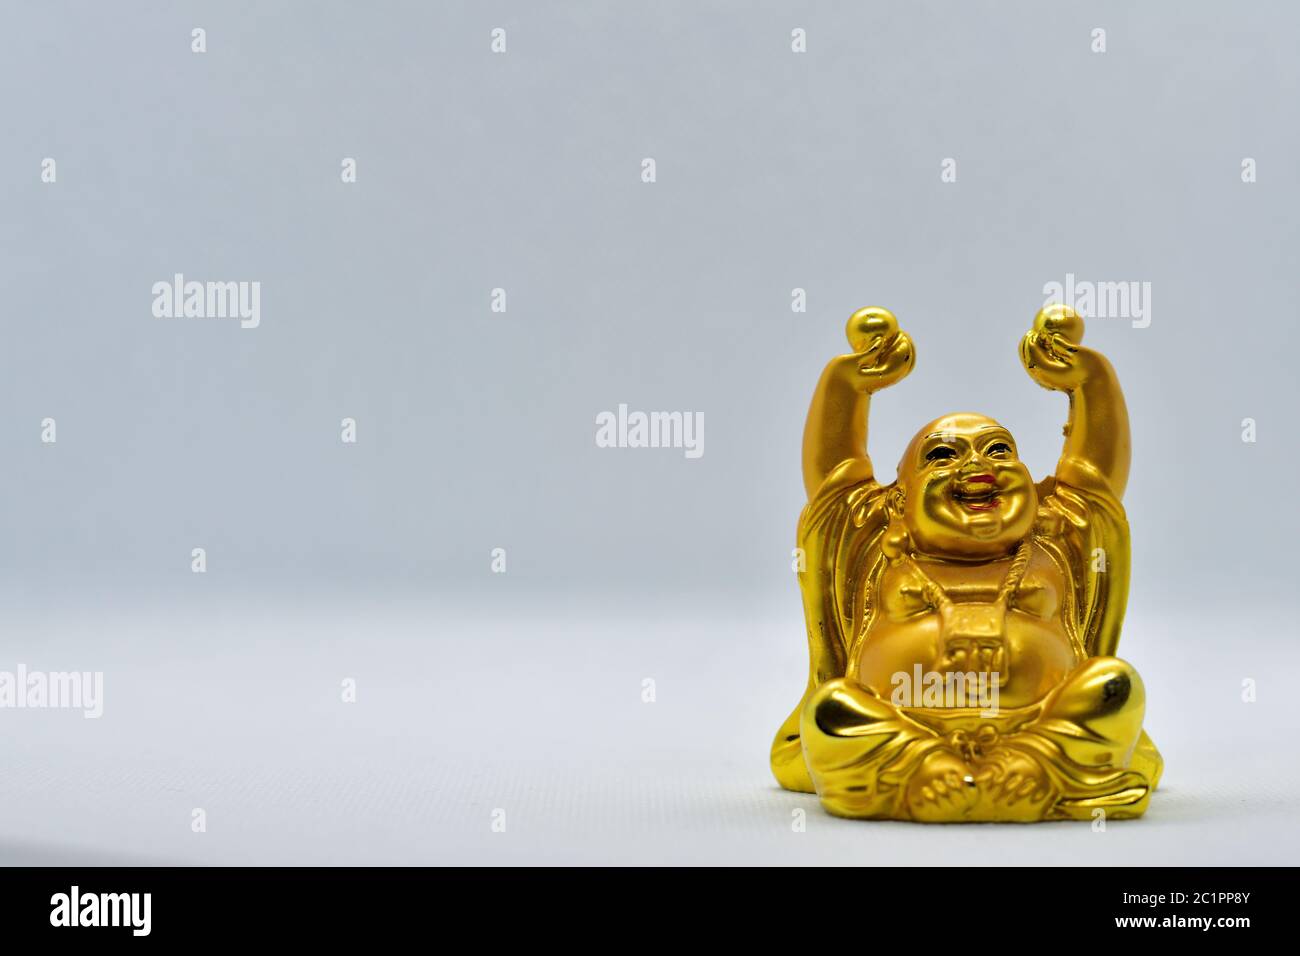 Le Bouddha riant est un symbole de bonheur, de contentement et de prospérité. Il est appelé « Budai » en chinois. Banque D'Images